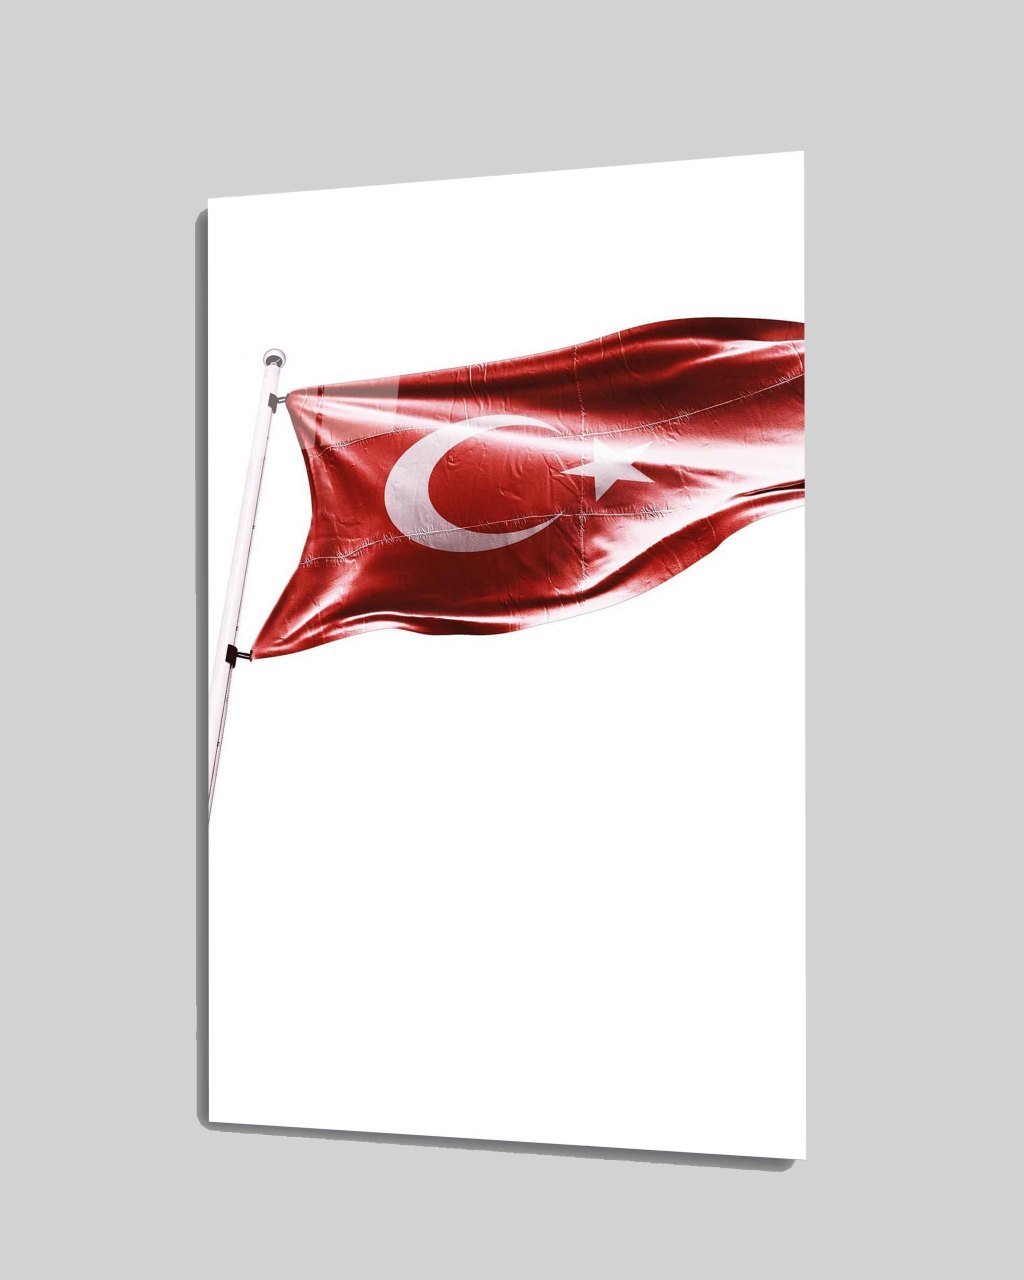 İdealizbiz Türk Bayrağı Cam Tablo  4mm Dayanıklı Temperli Cam